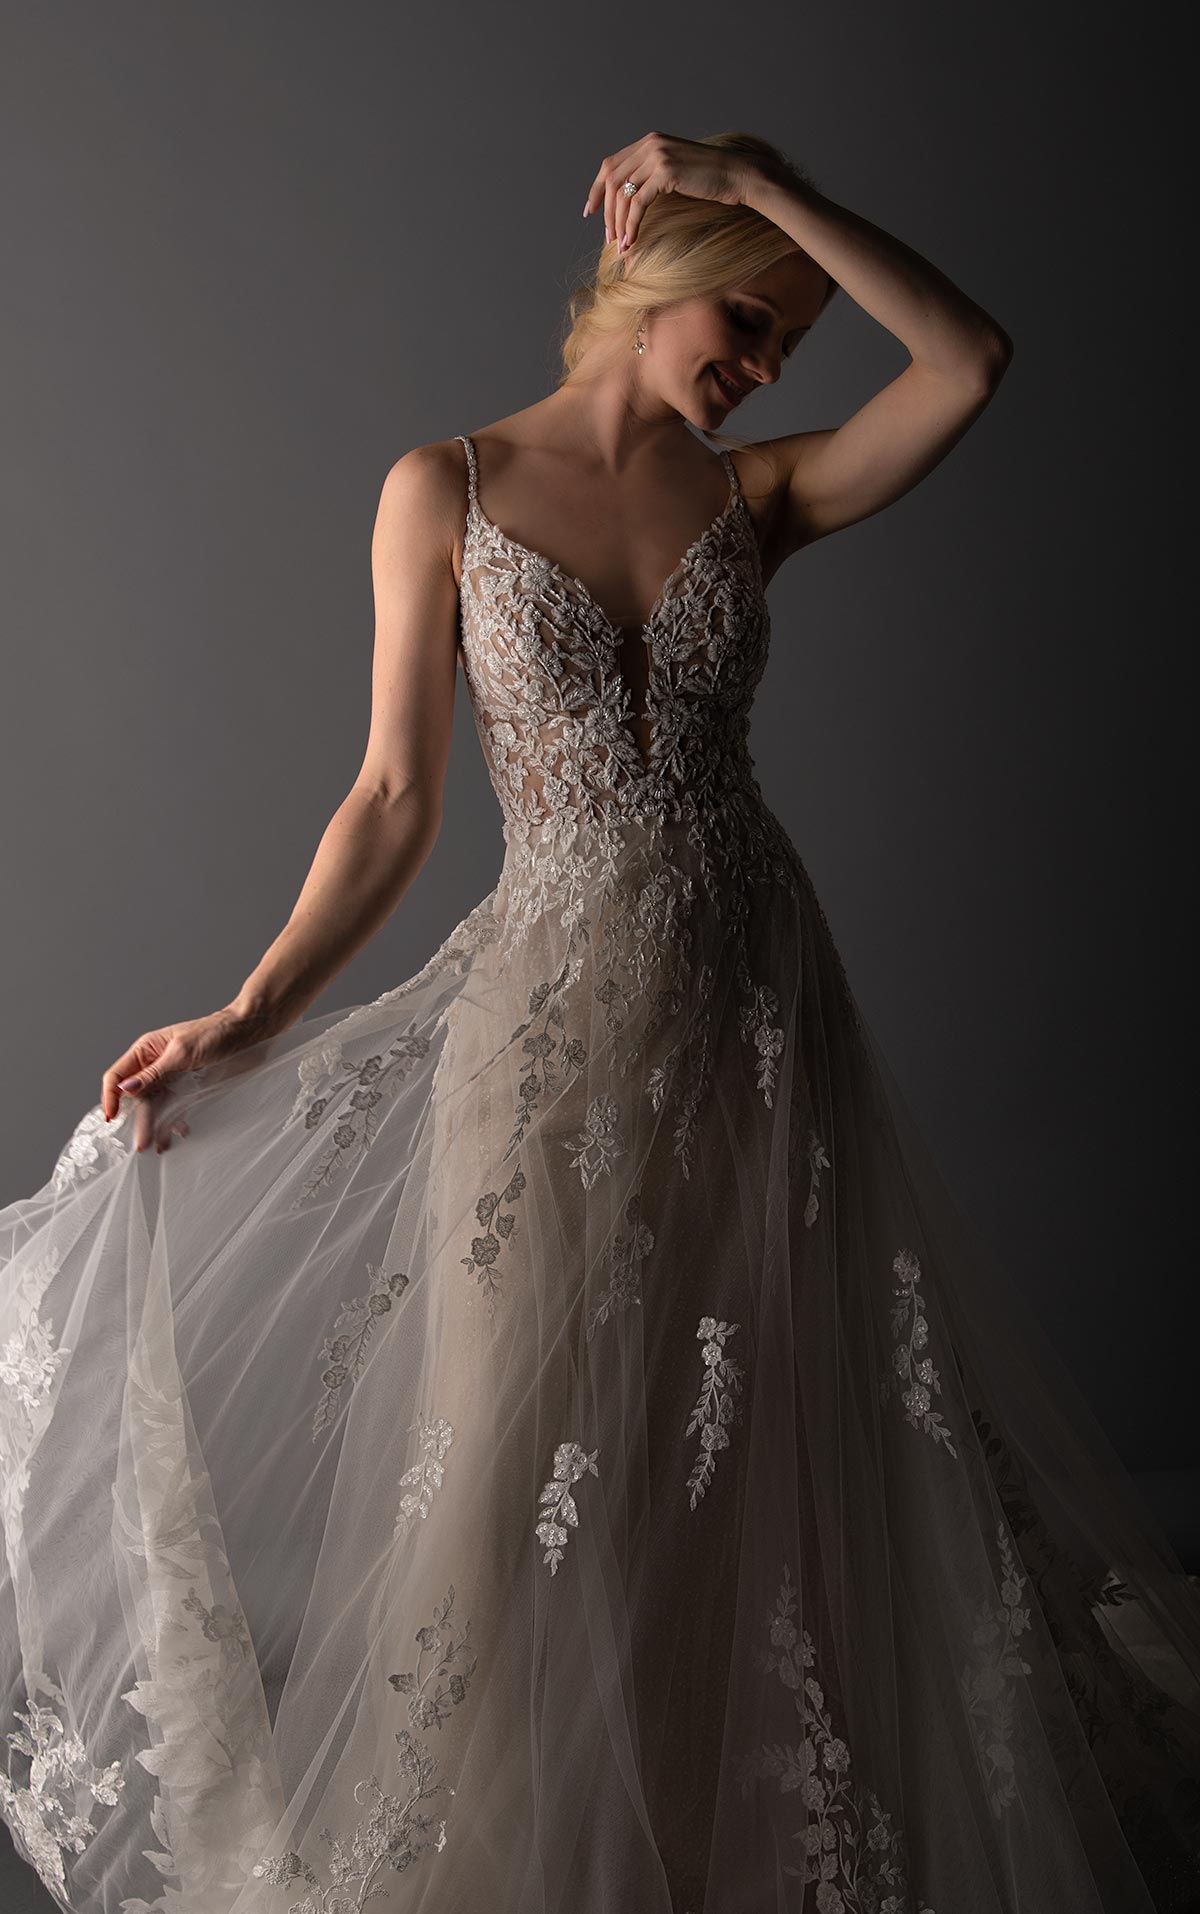 Precioso vestido de novia con detalles de pedrería y encaje floral